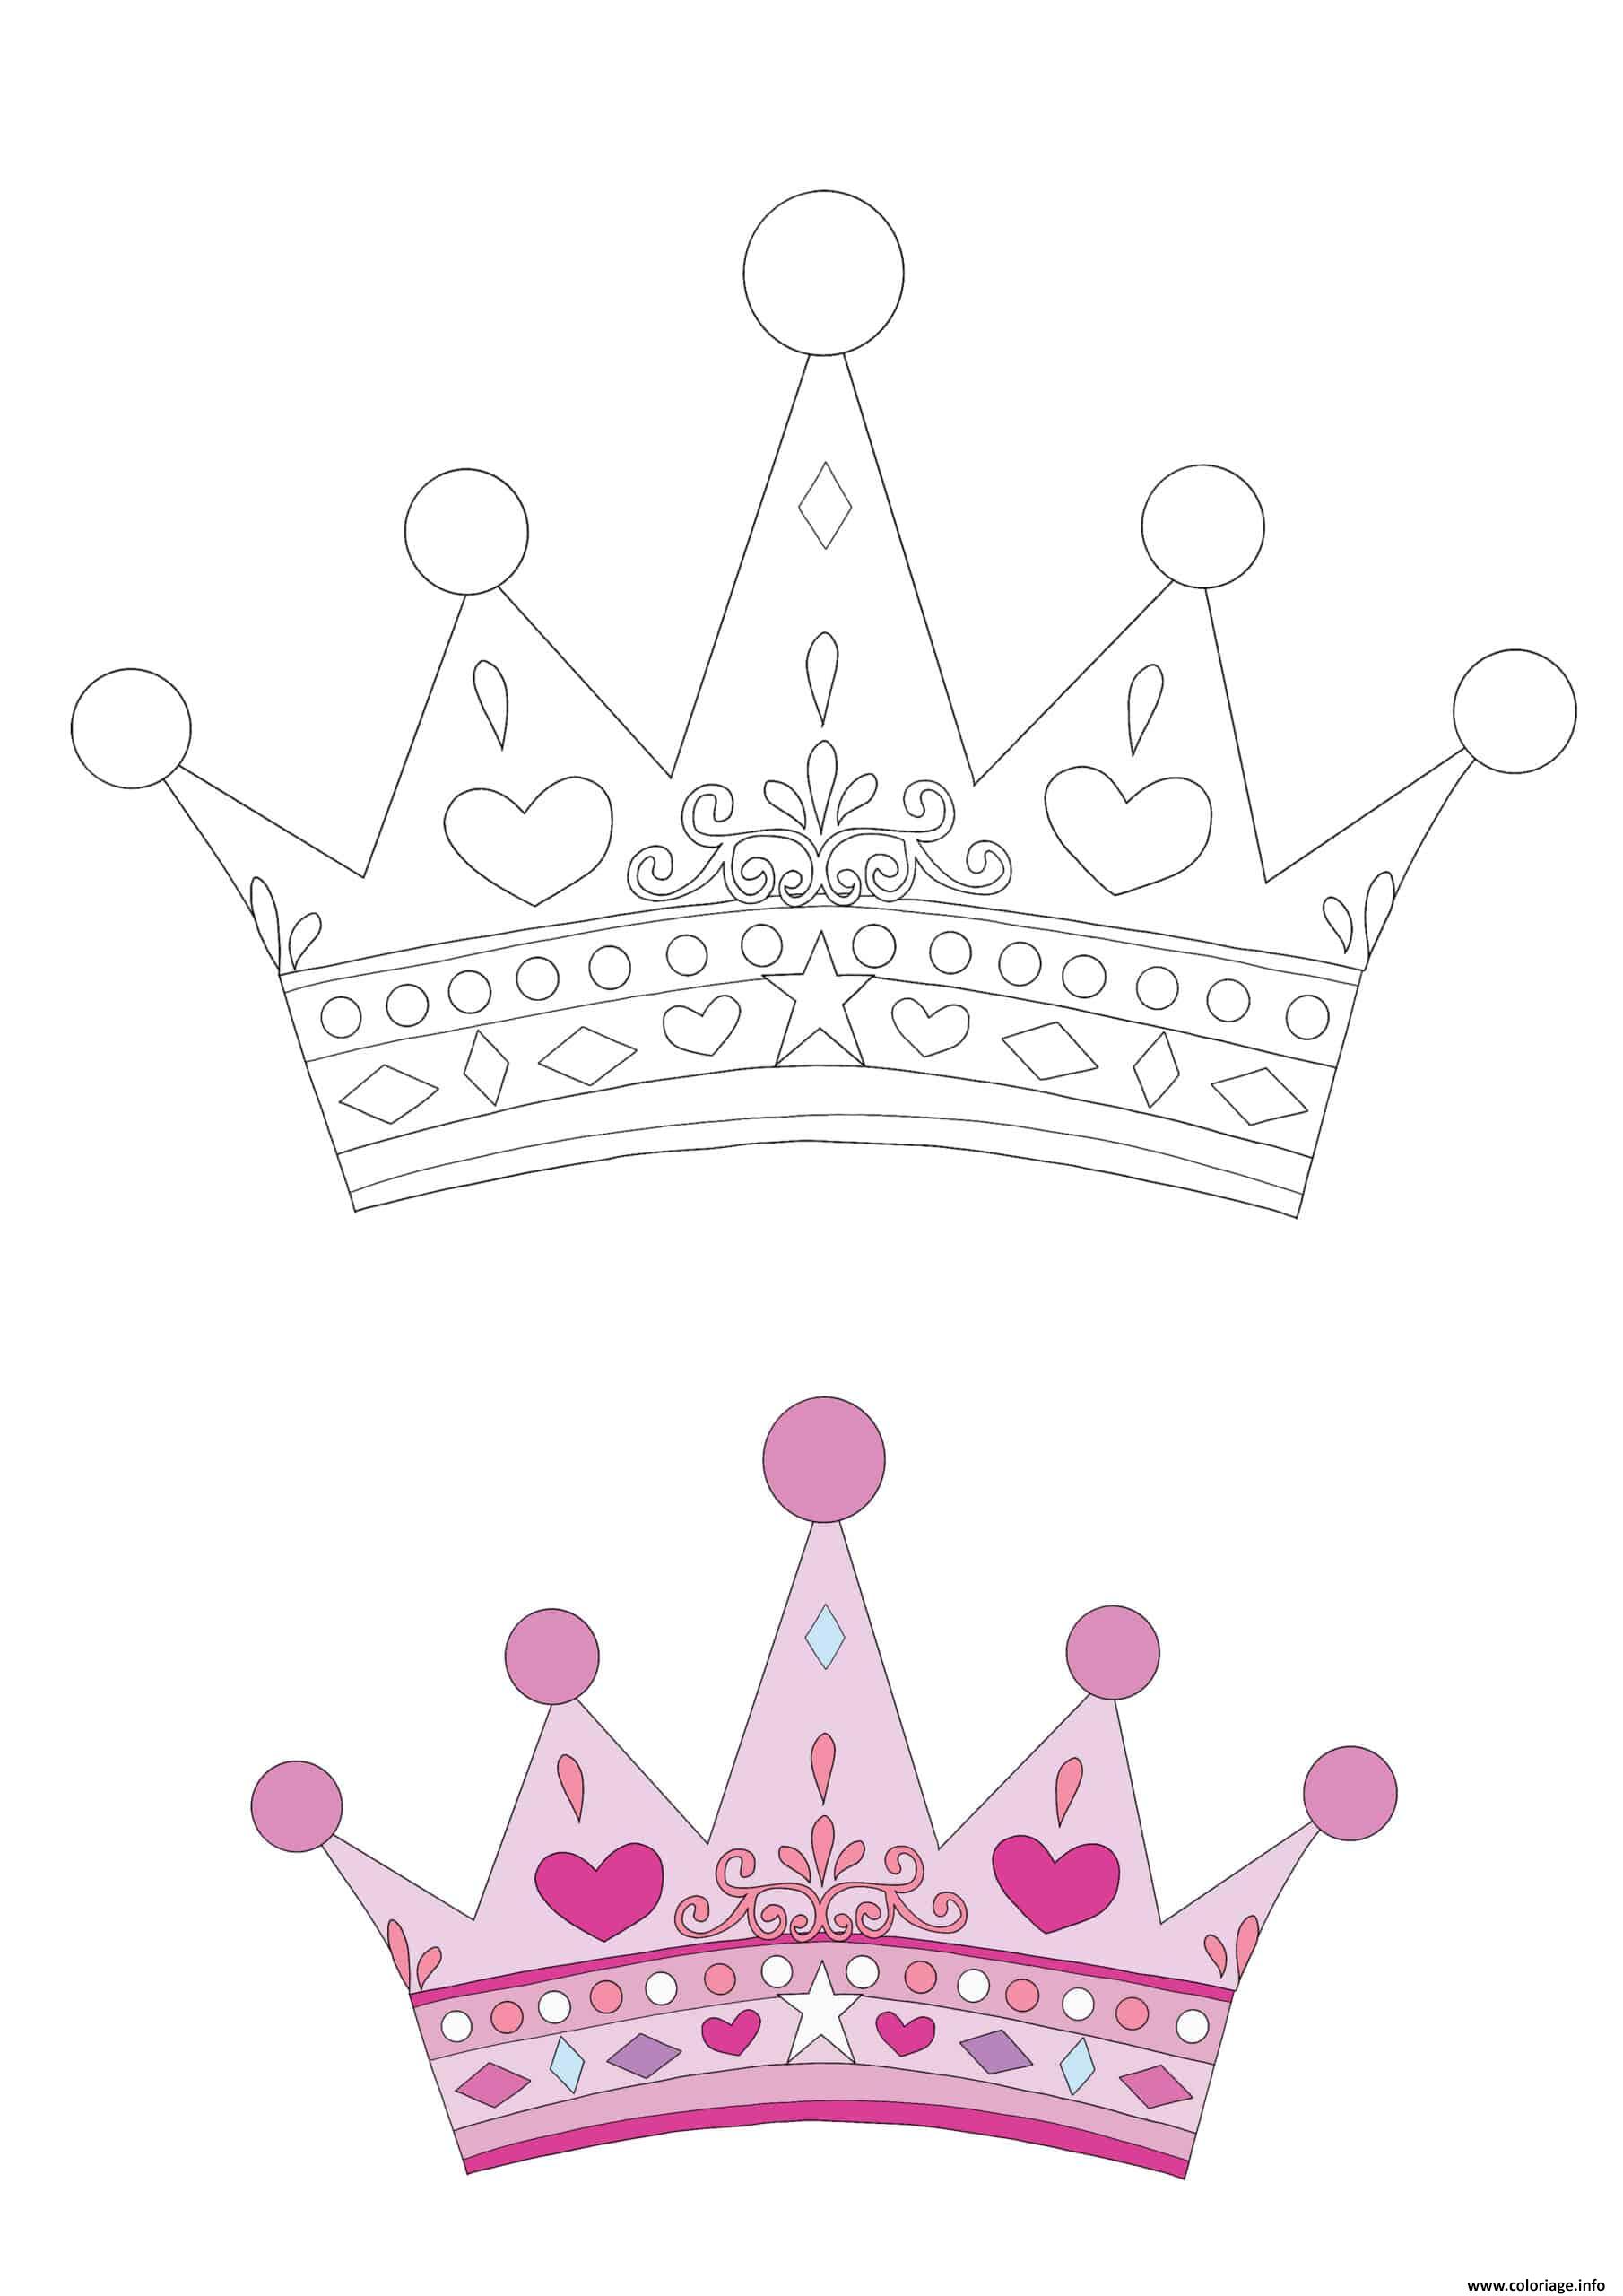 Dessin Princesse Crown Coloriage Gratuit à Imprimer